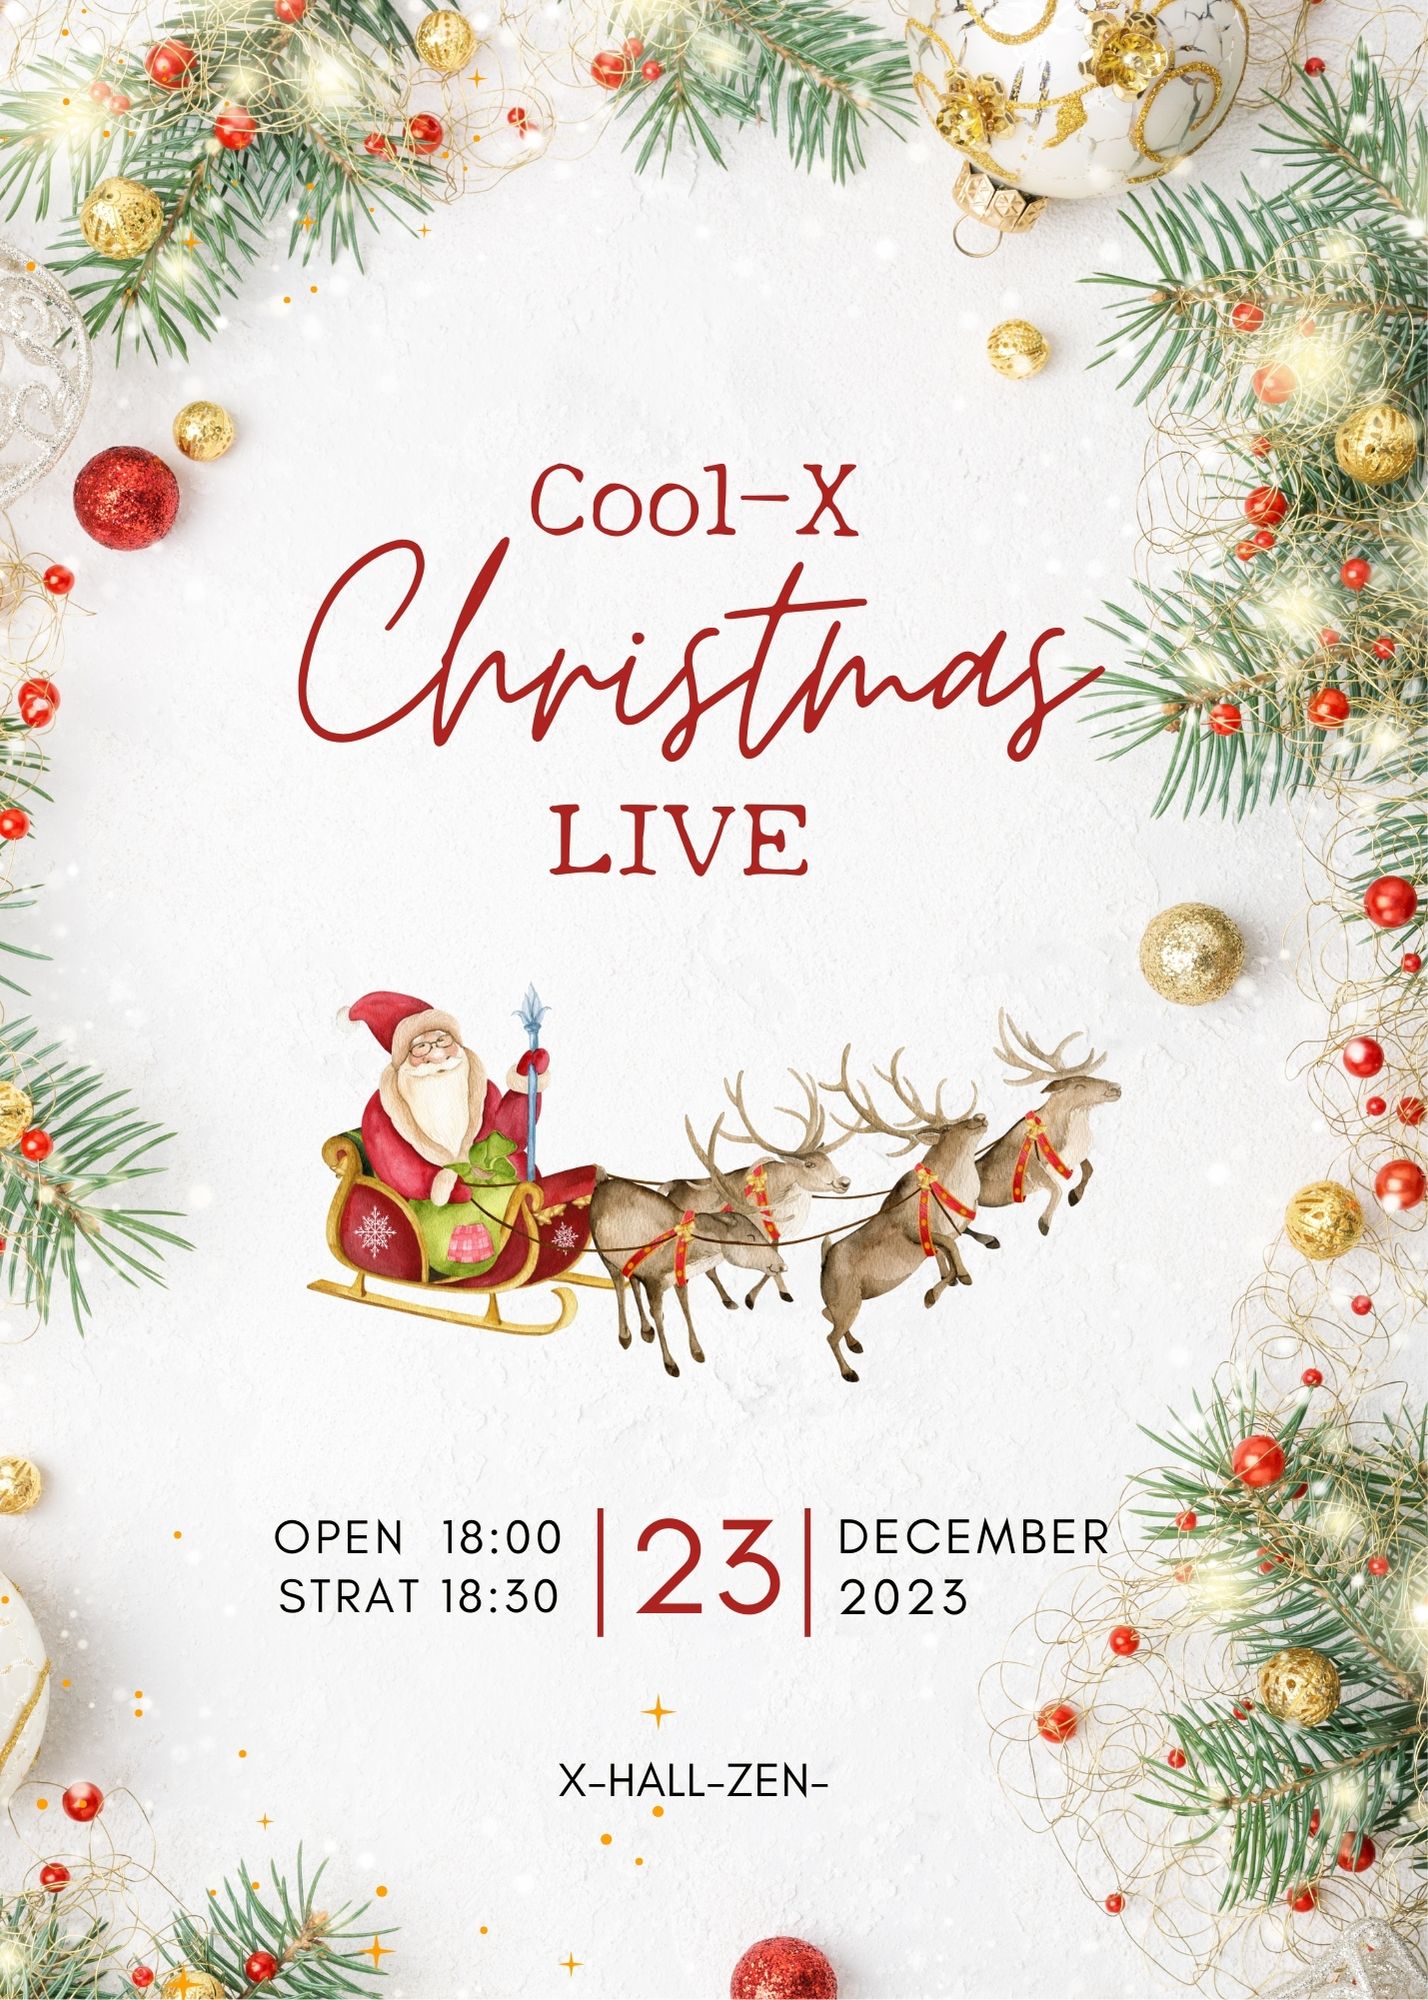 Cool-X Christmas LIVE